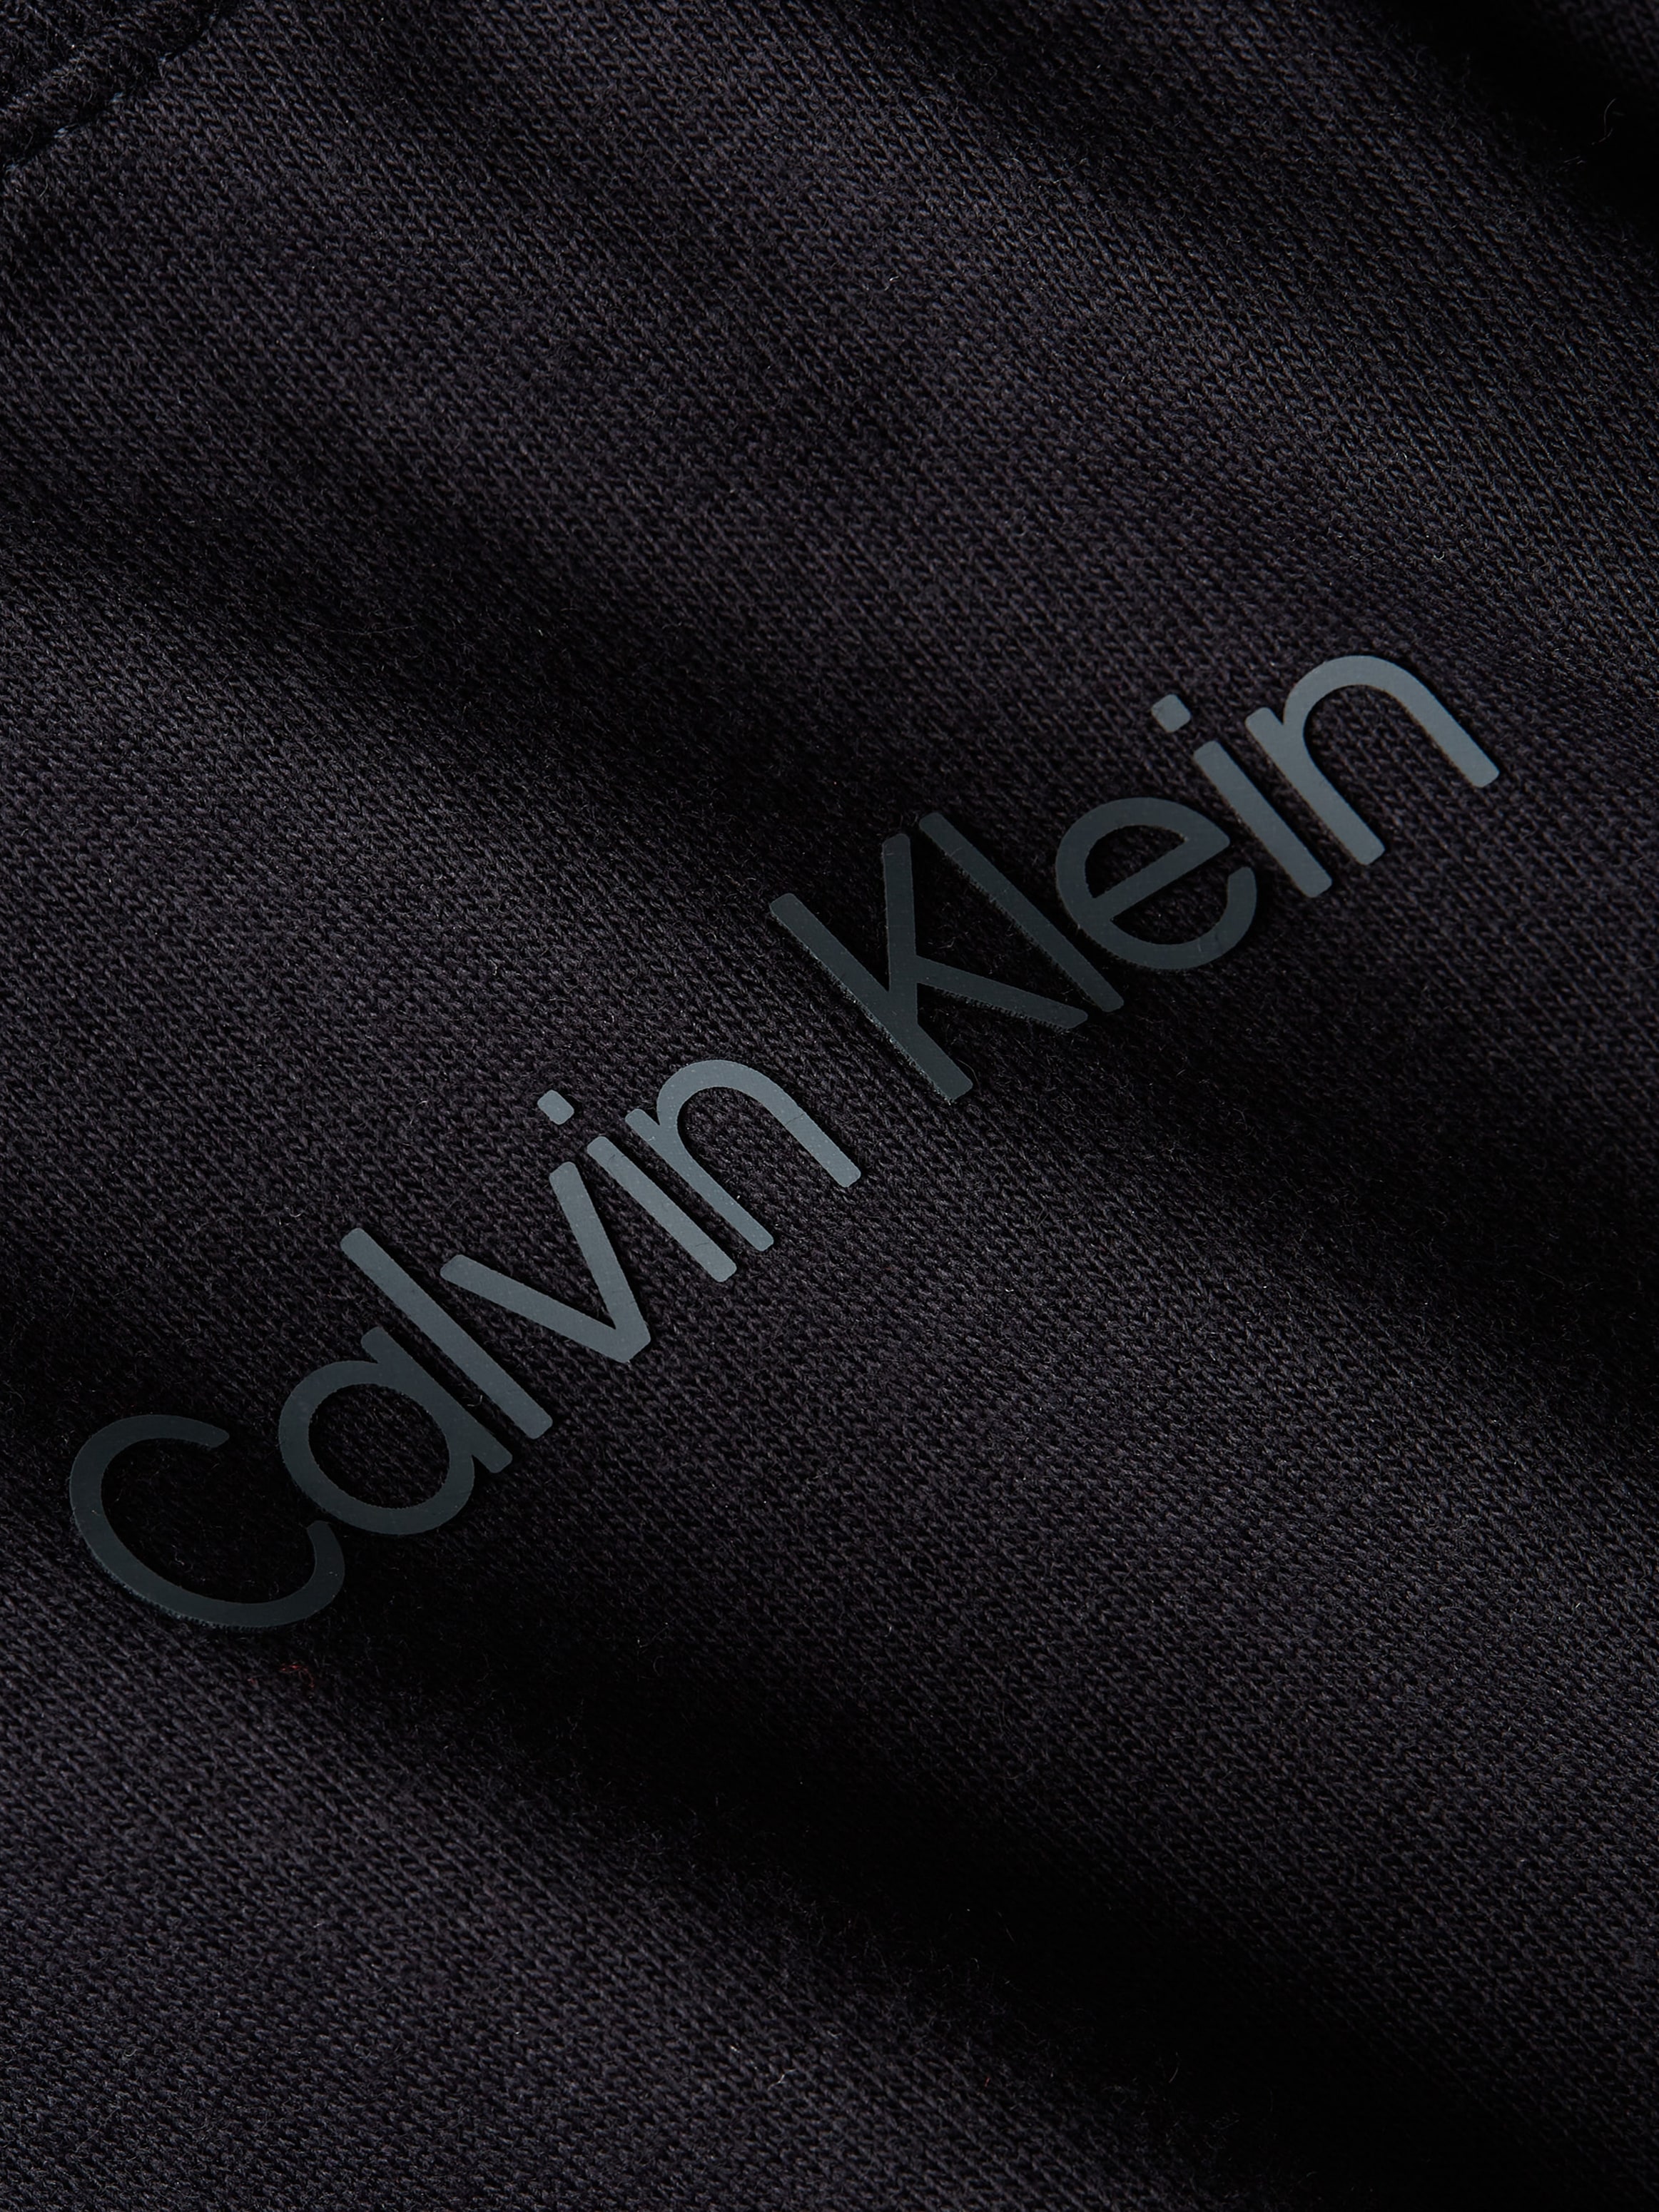 Calvin Klein Sport Langarmshirt »PW - LS Top (Cropped)«, mit Rundhalsausschnitt